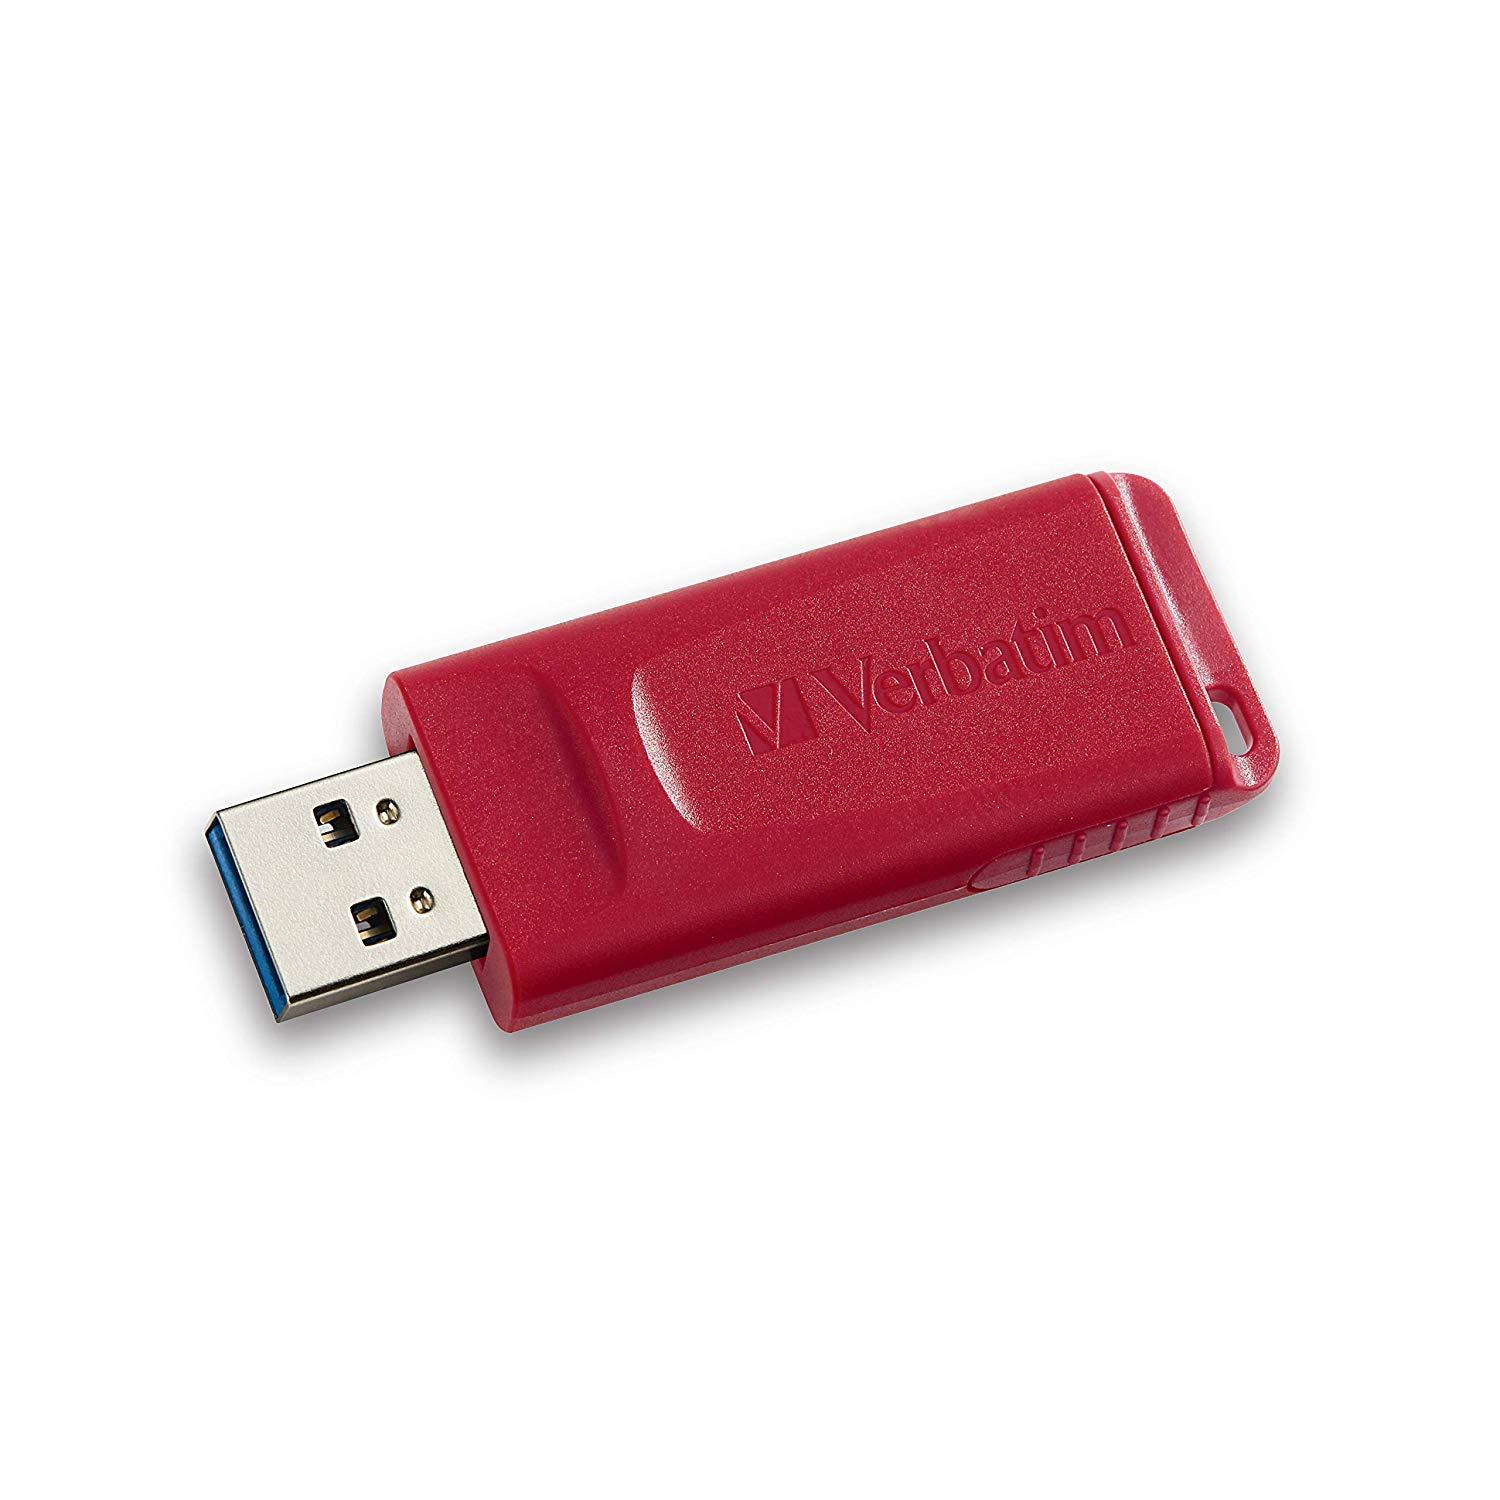 VERBATIM® 96806 STORE 'N' GO® USB FLASH DRIVE (32GB)